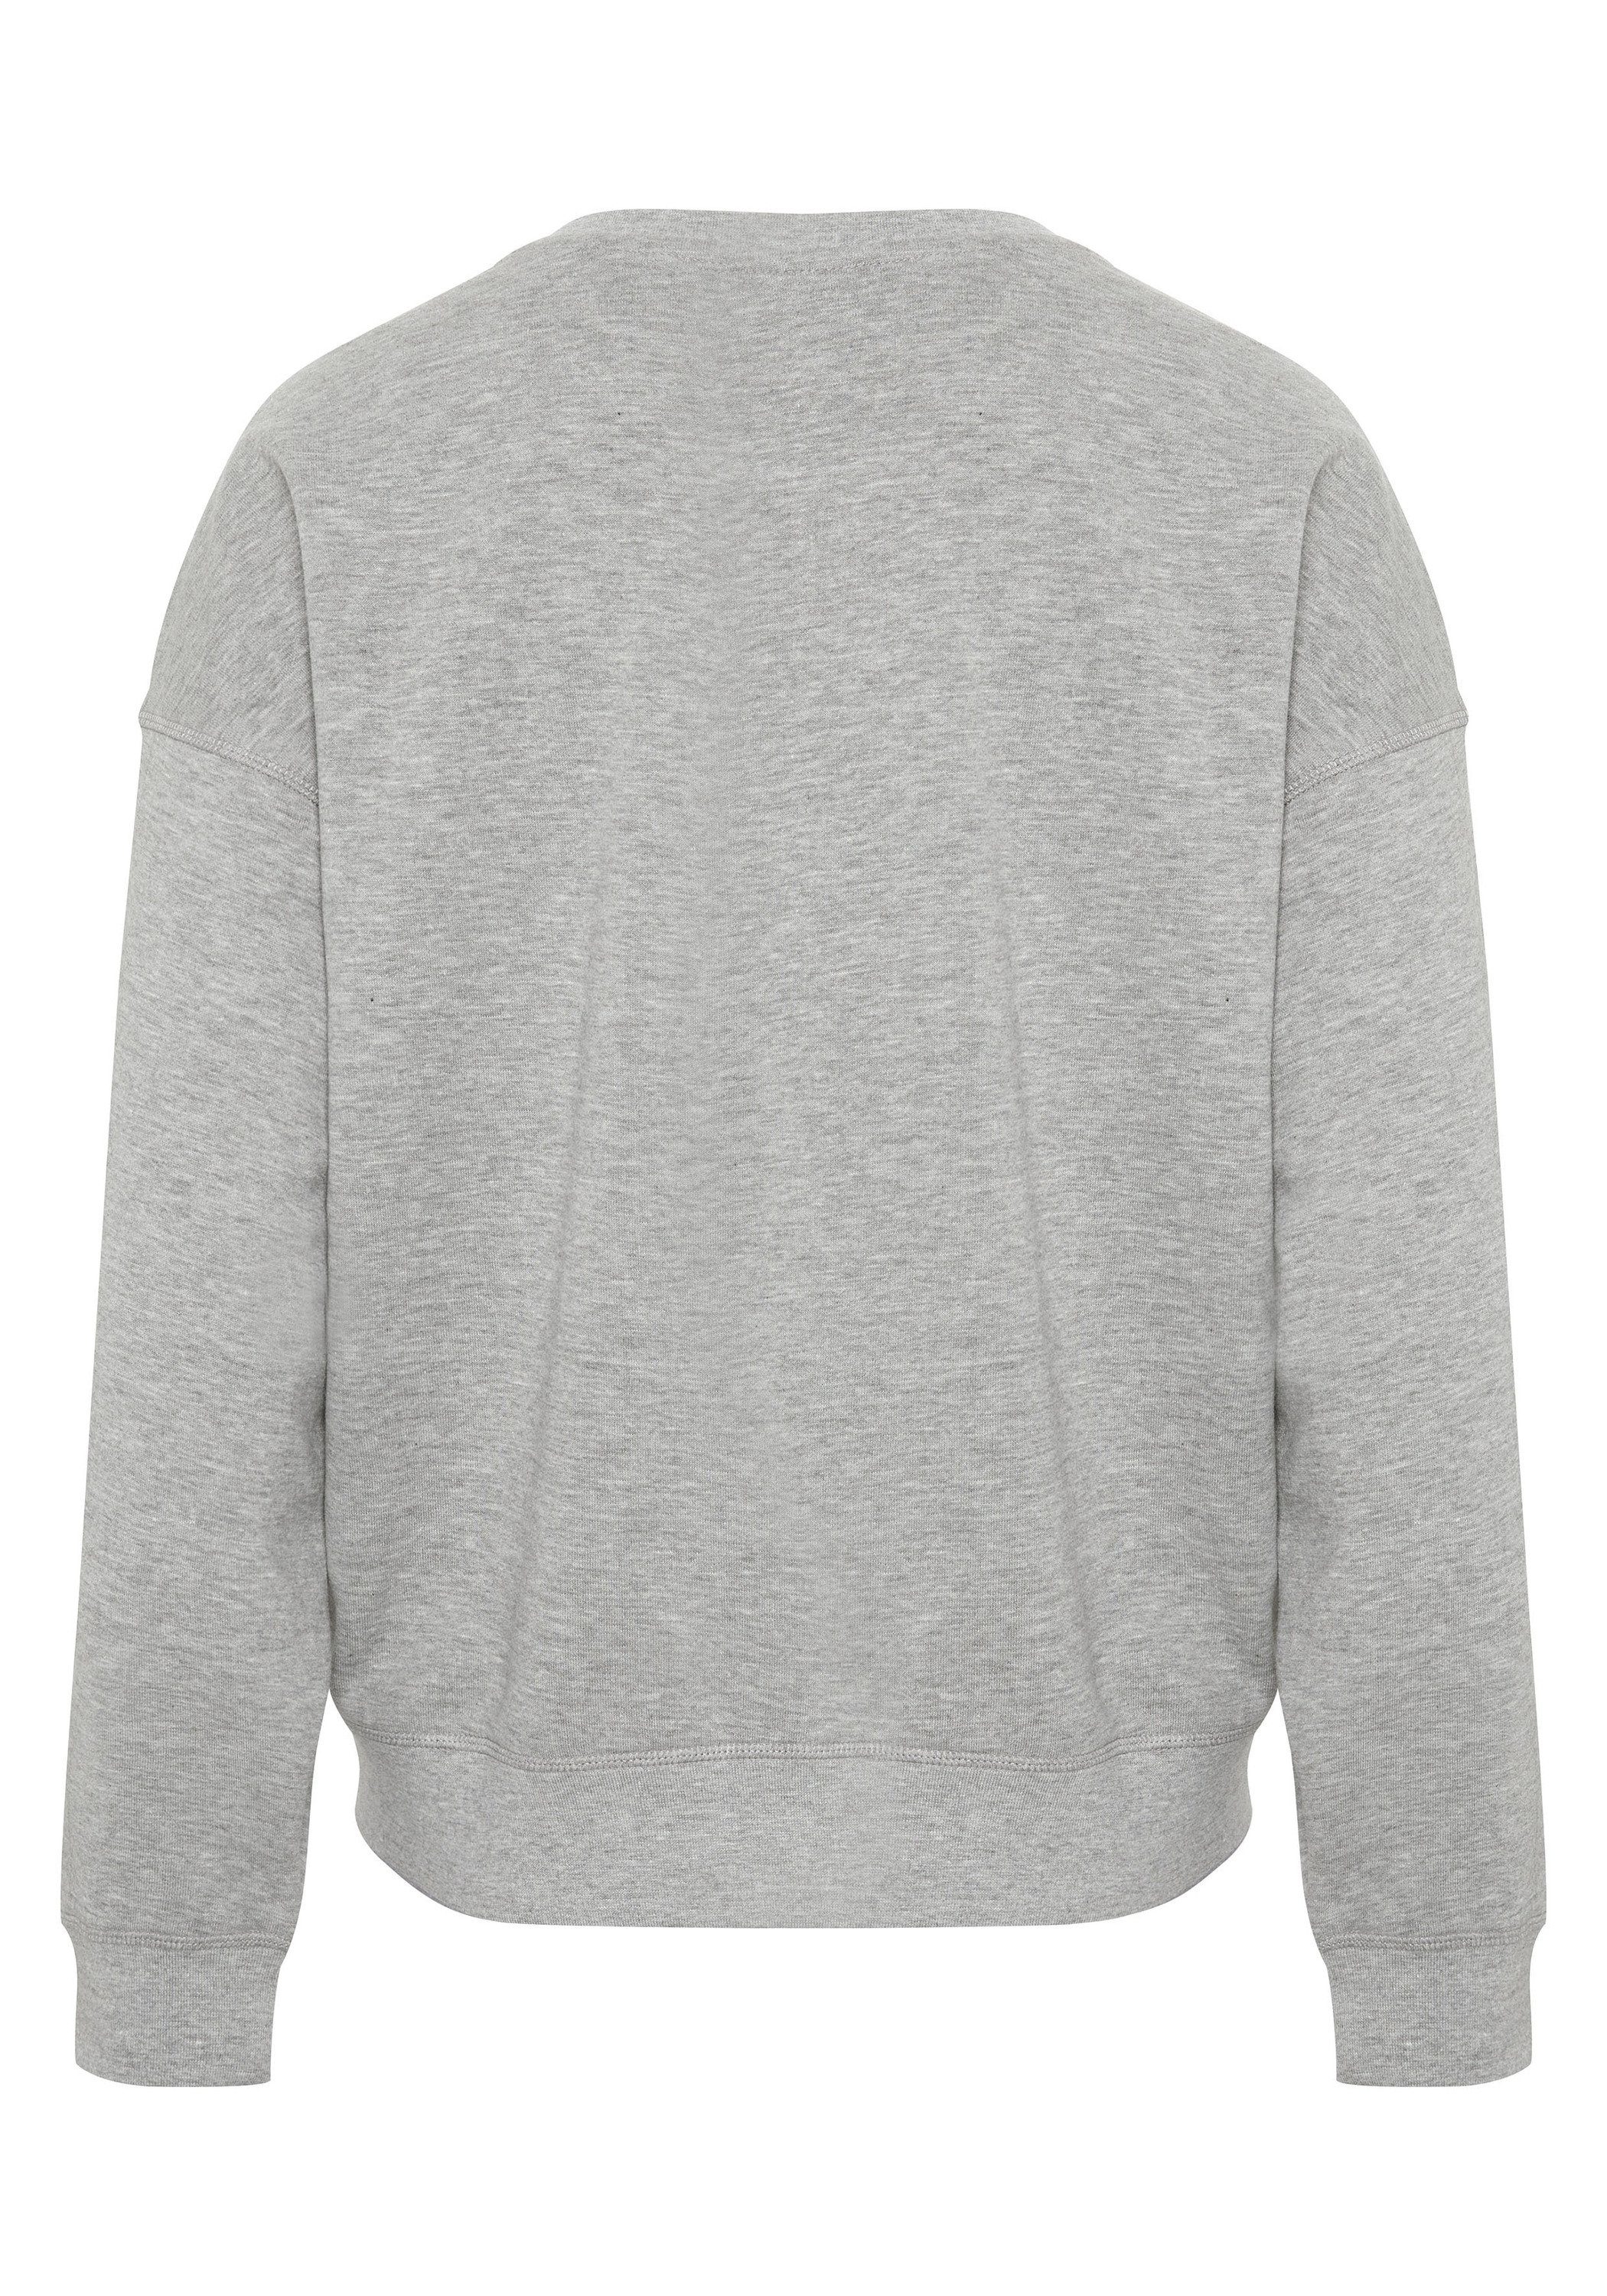 JETTE SPORT Label-Design 17-4402M im Neutral Sweatshirt Gray Melange